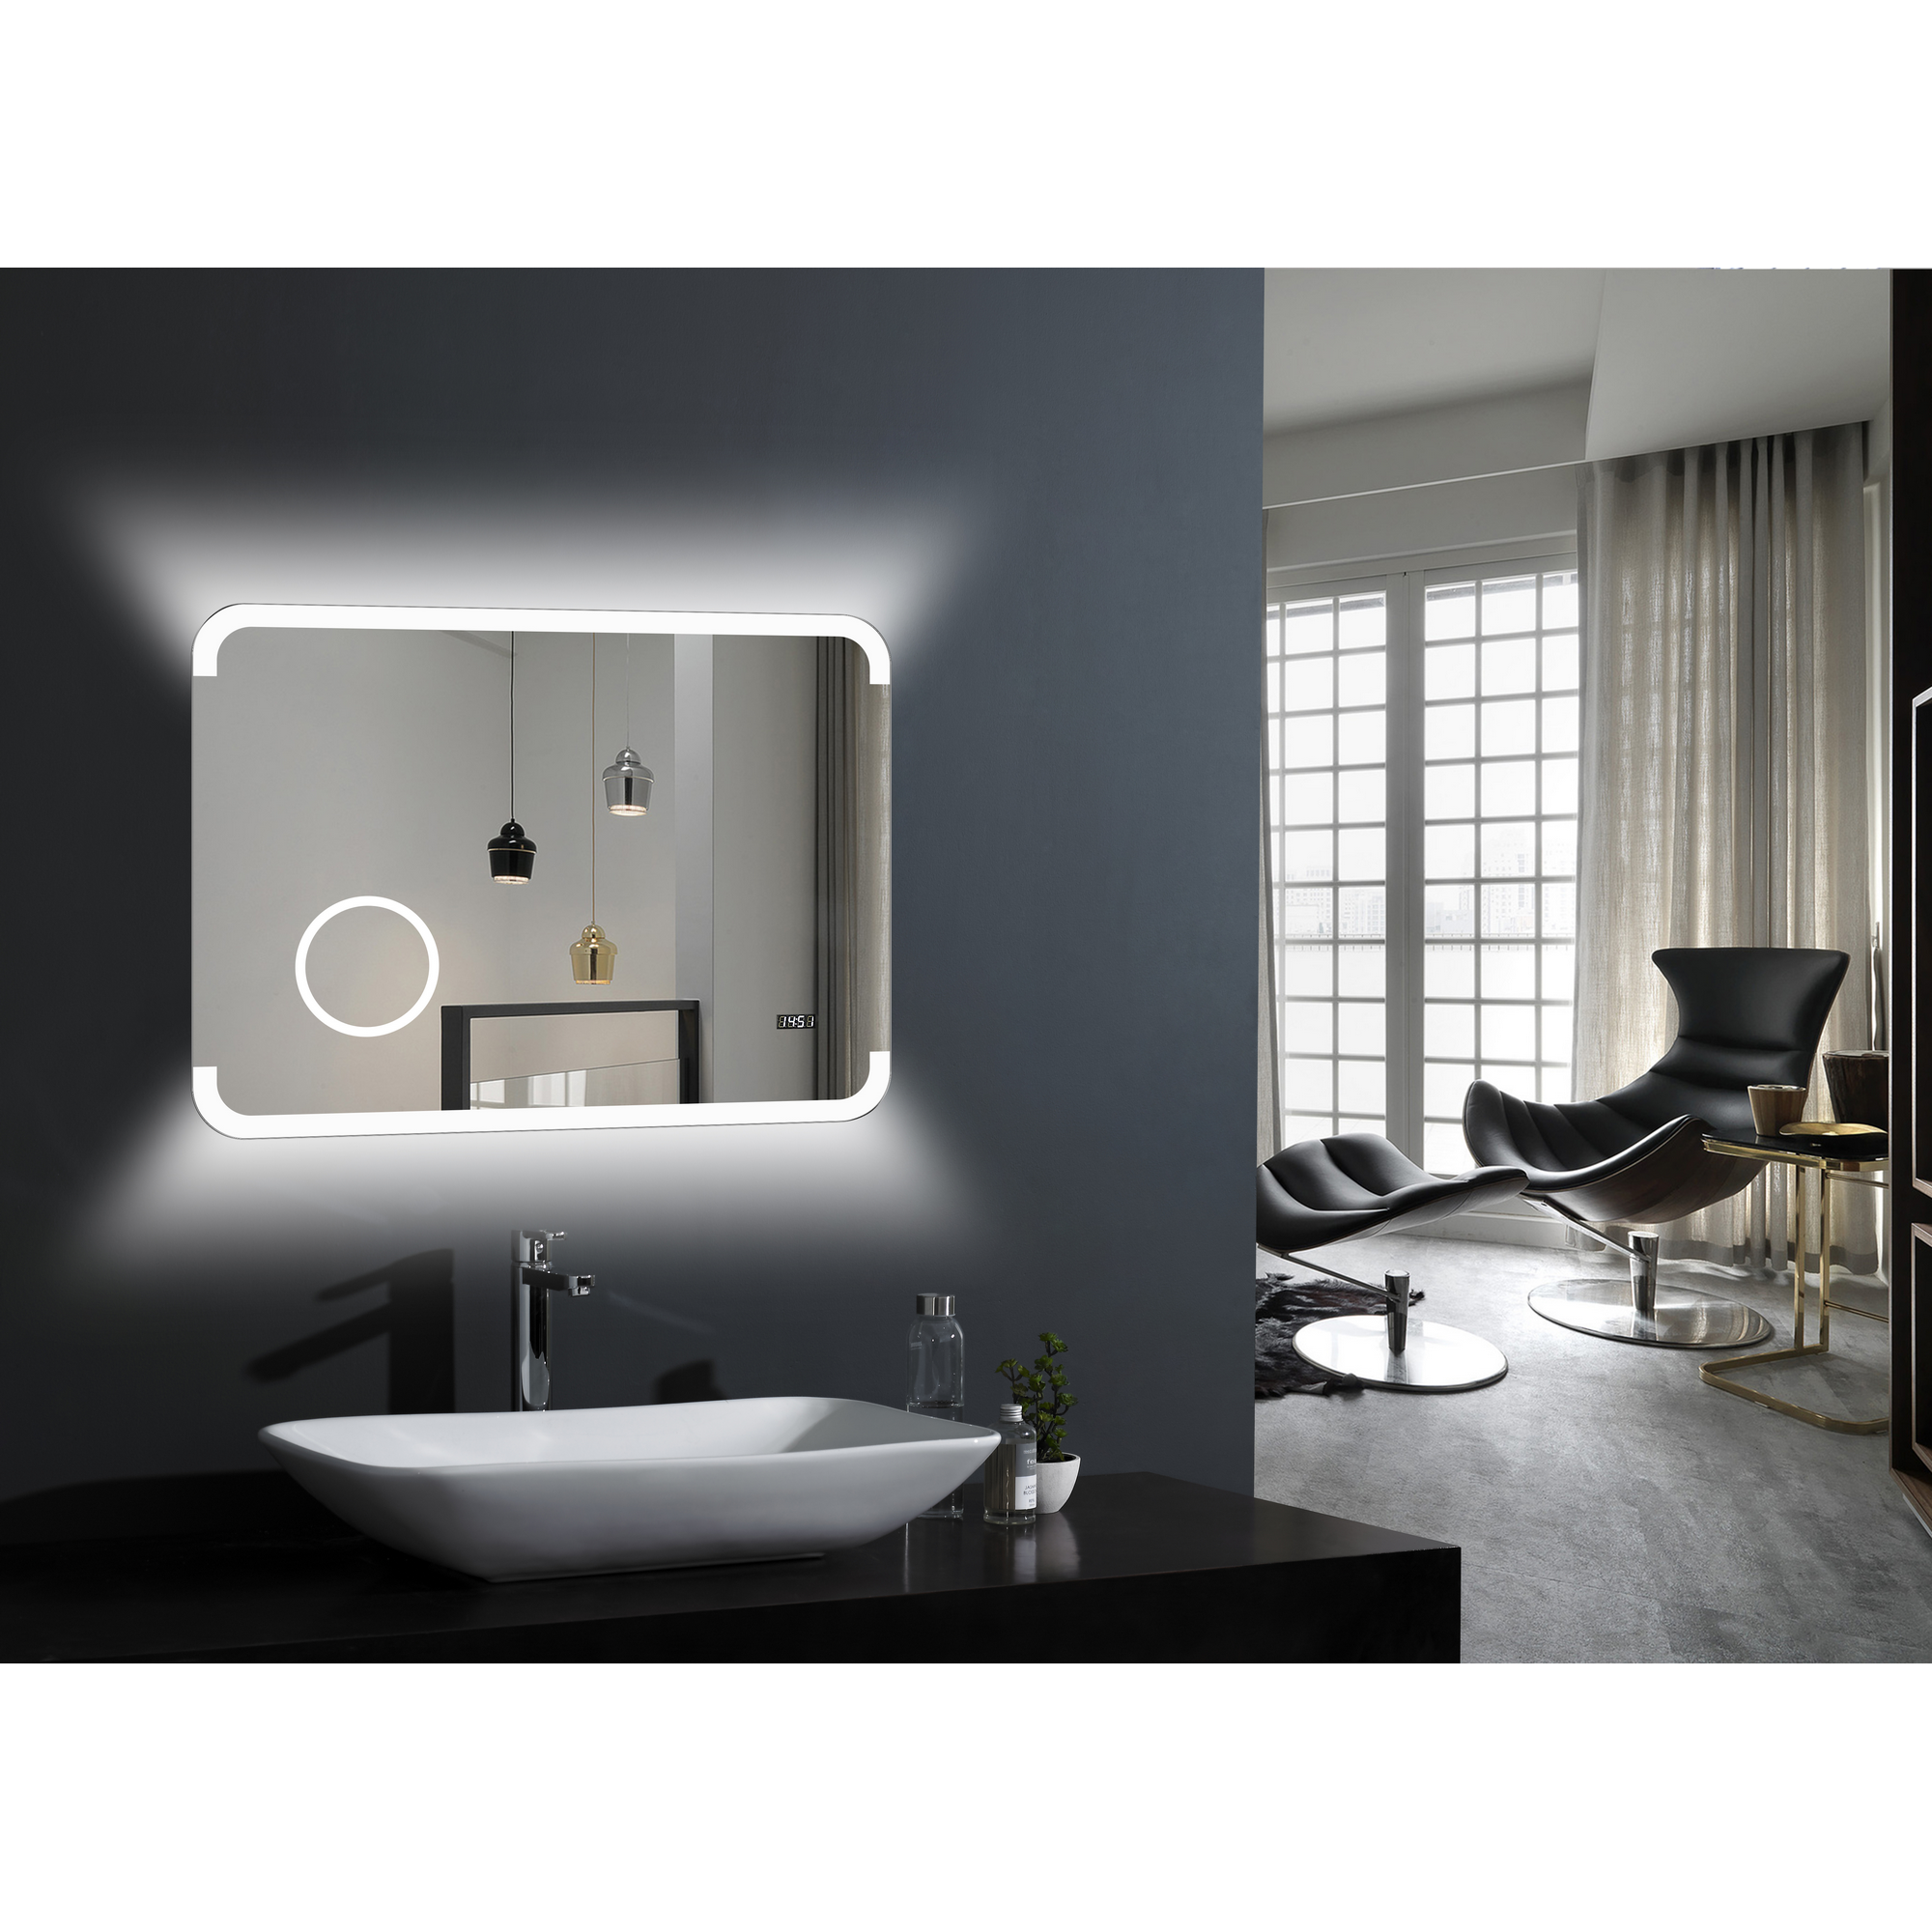 LED-Spiegel 'Silver Grace' mit Uhr und Kosmetikspiegel 80 x 60 cm + product picture